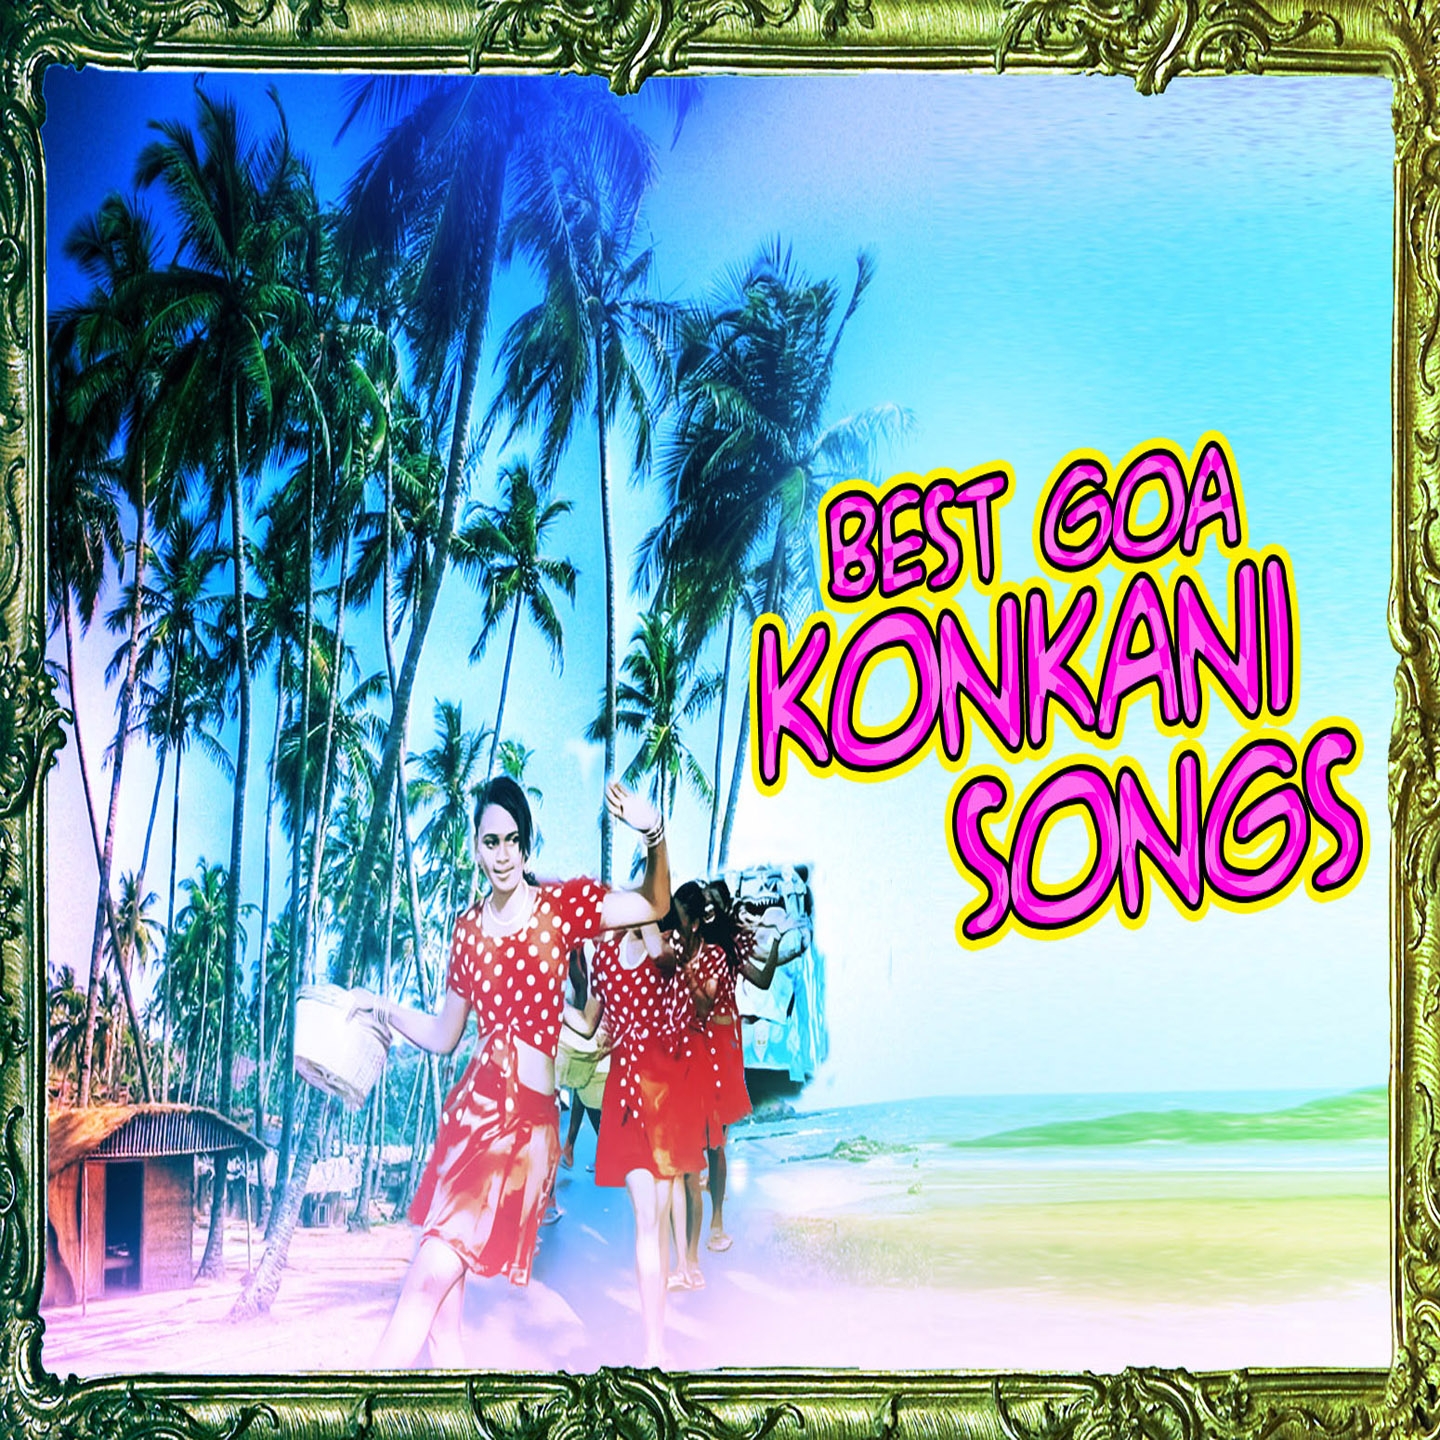 Best Goa Konkani Songs